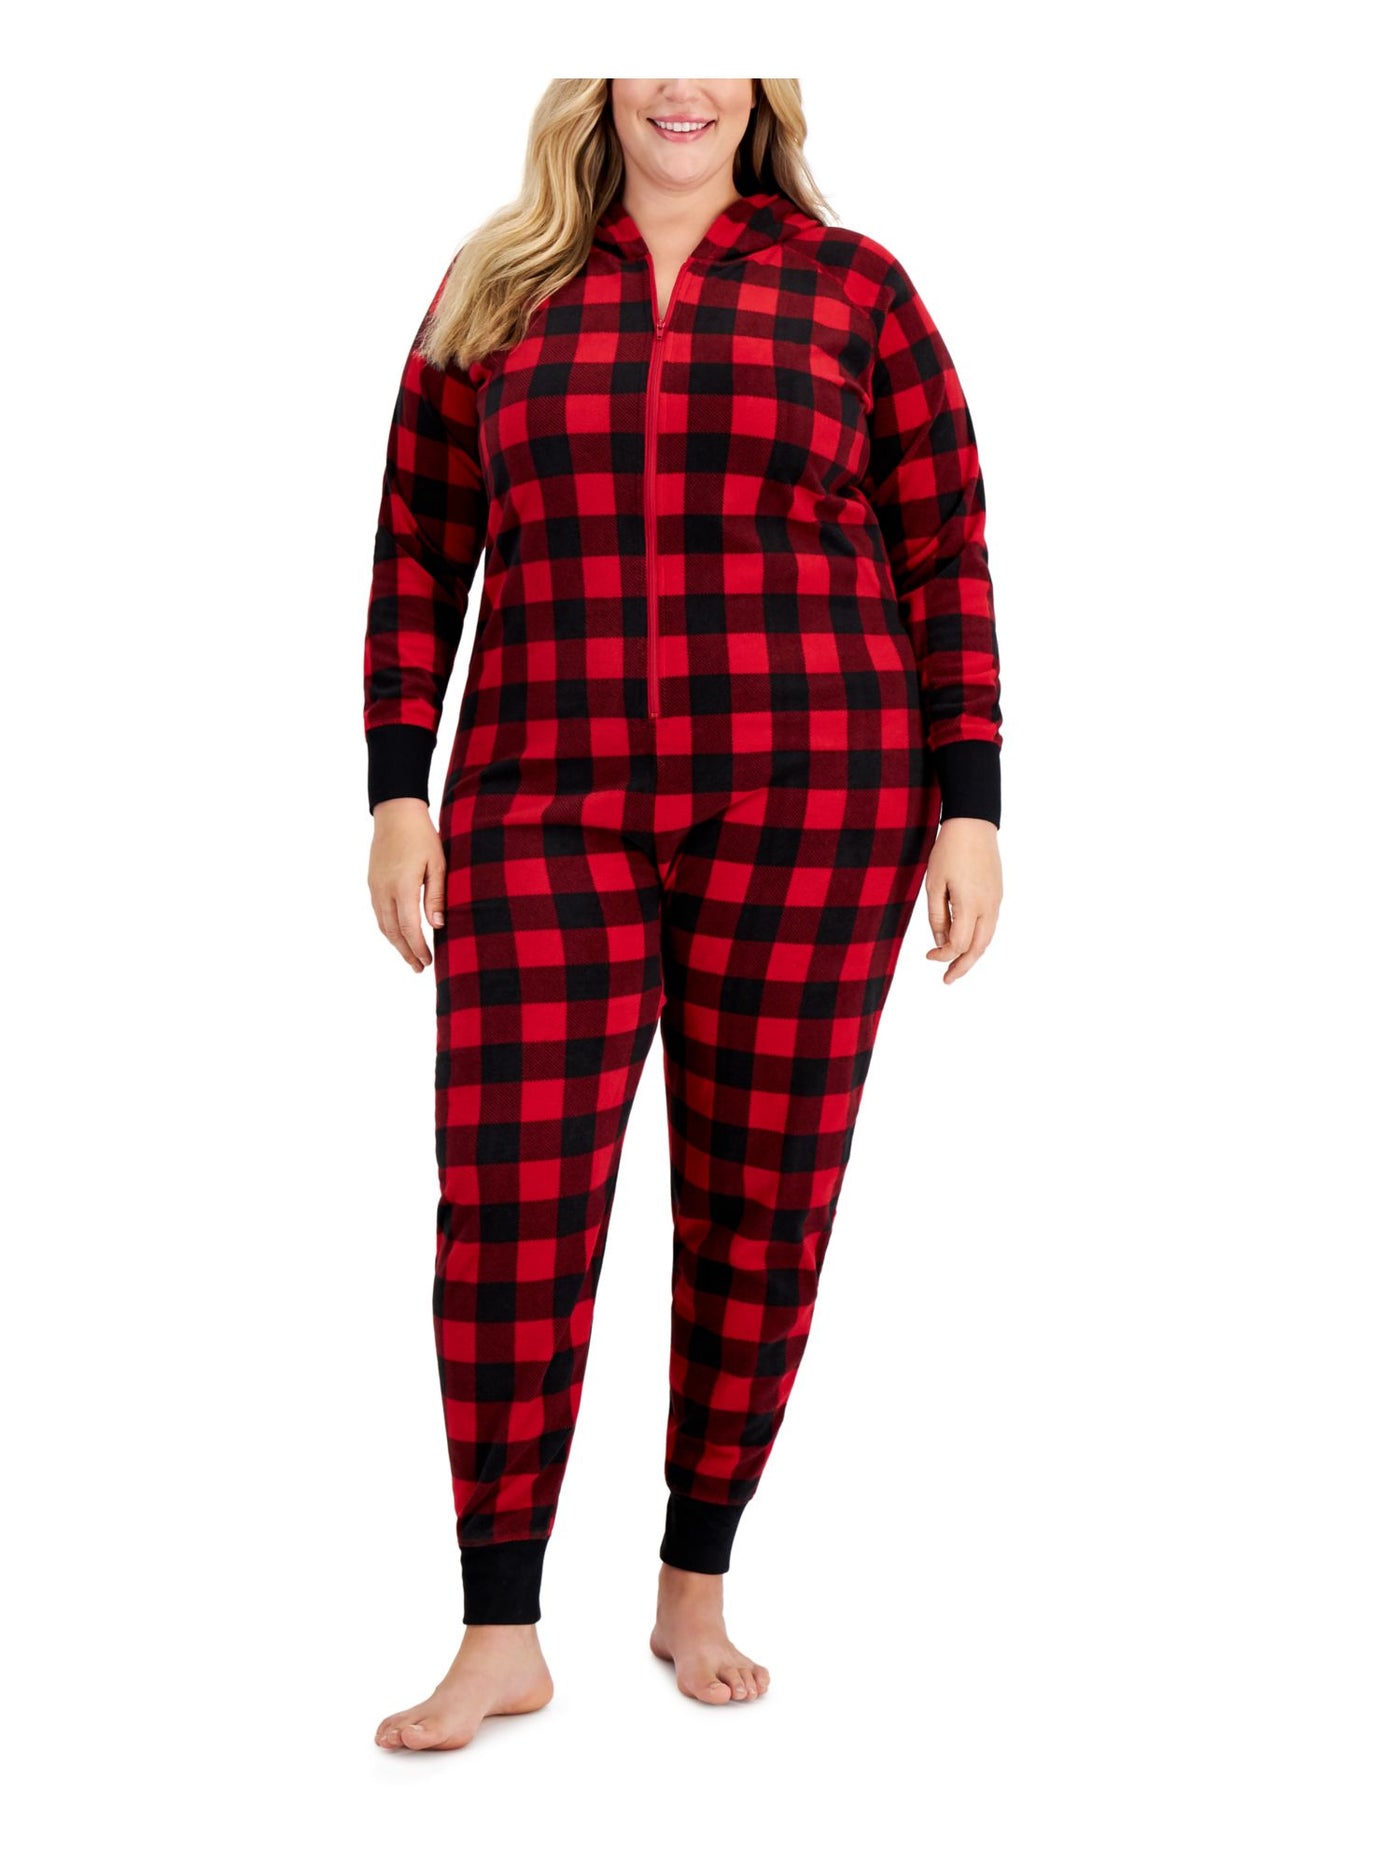 FAMILY PJs Intimates Red 1 Piece Cuffed Fleece Pajamas Plus 2X